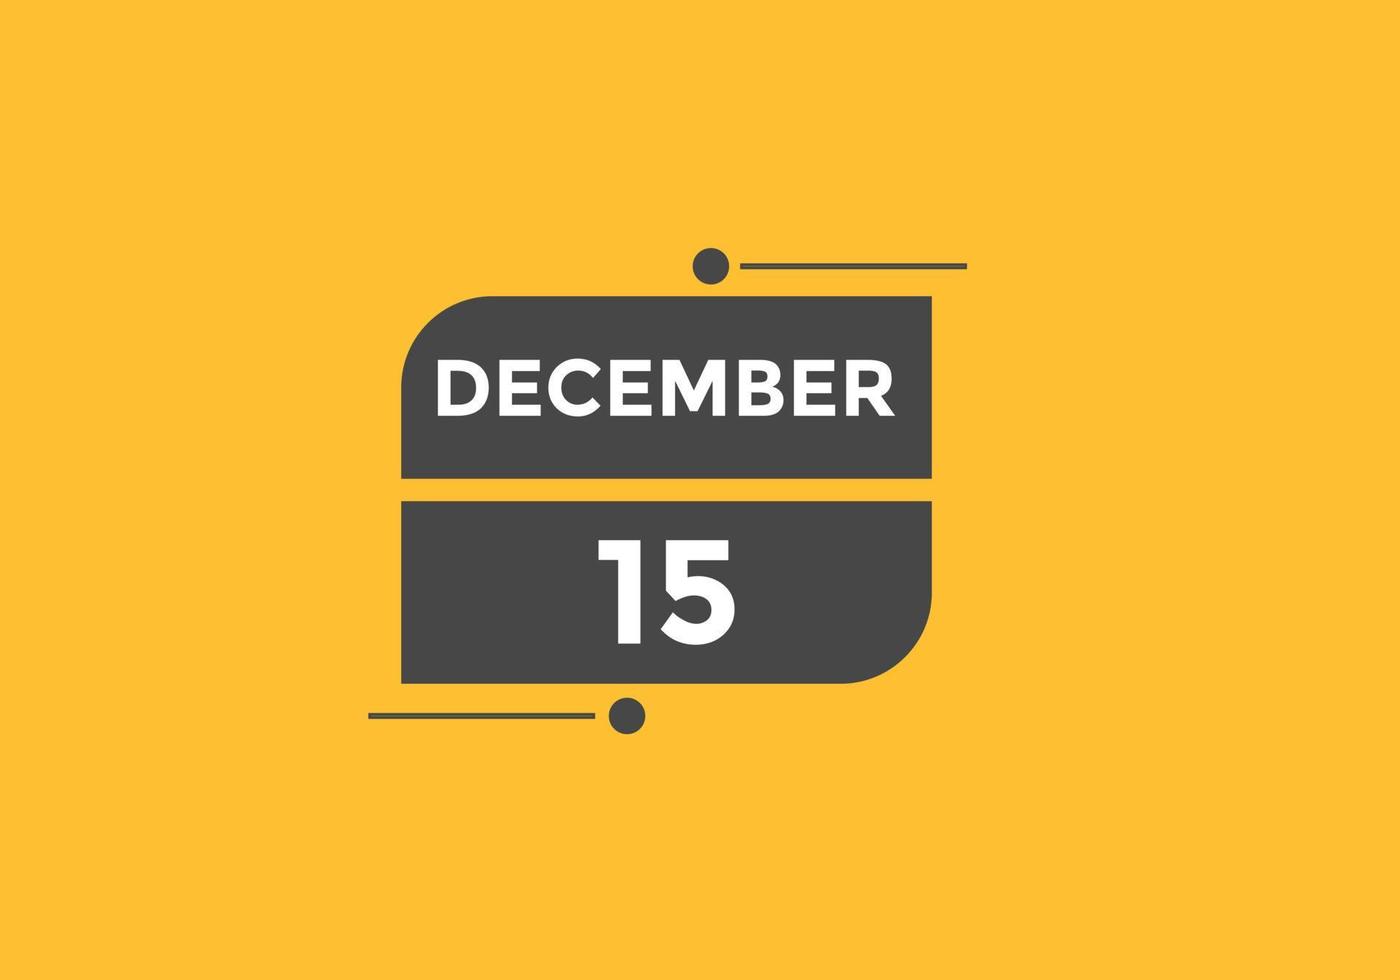 lembrete de calendário de 15 de dezembro. Modelo de ícone de calendário diário de 15 de dezembro. modelo de design de ícone de calendário 15 de dezembro. ilustração vetorial vetor